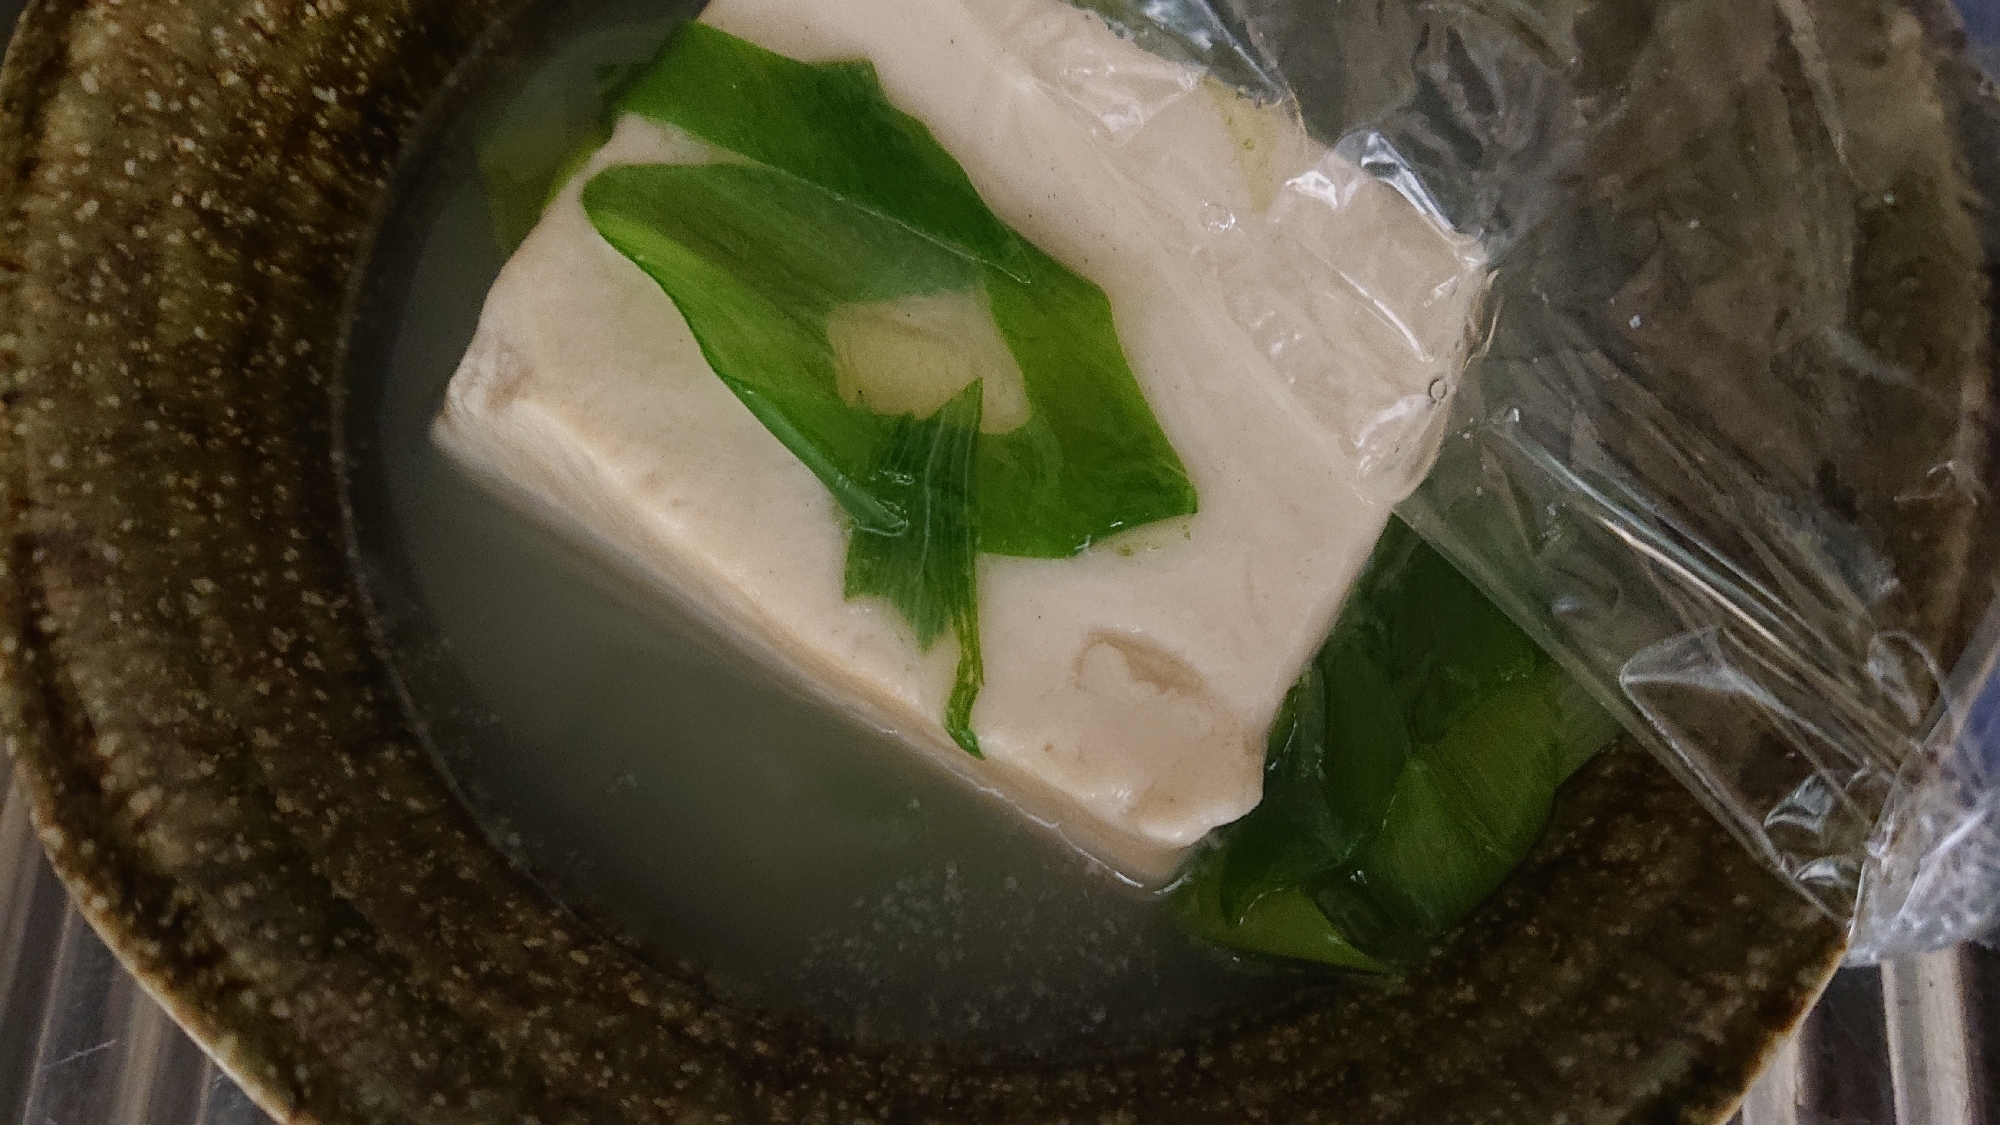 トロトロ湯豆腐